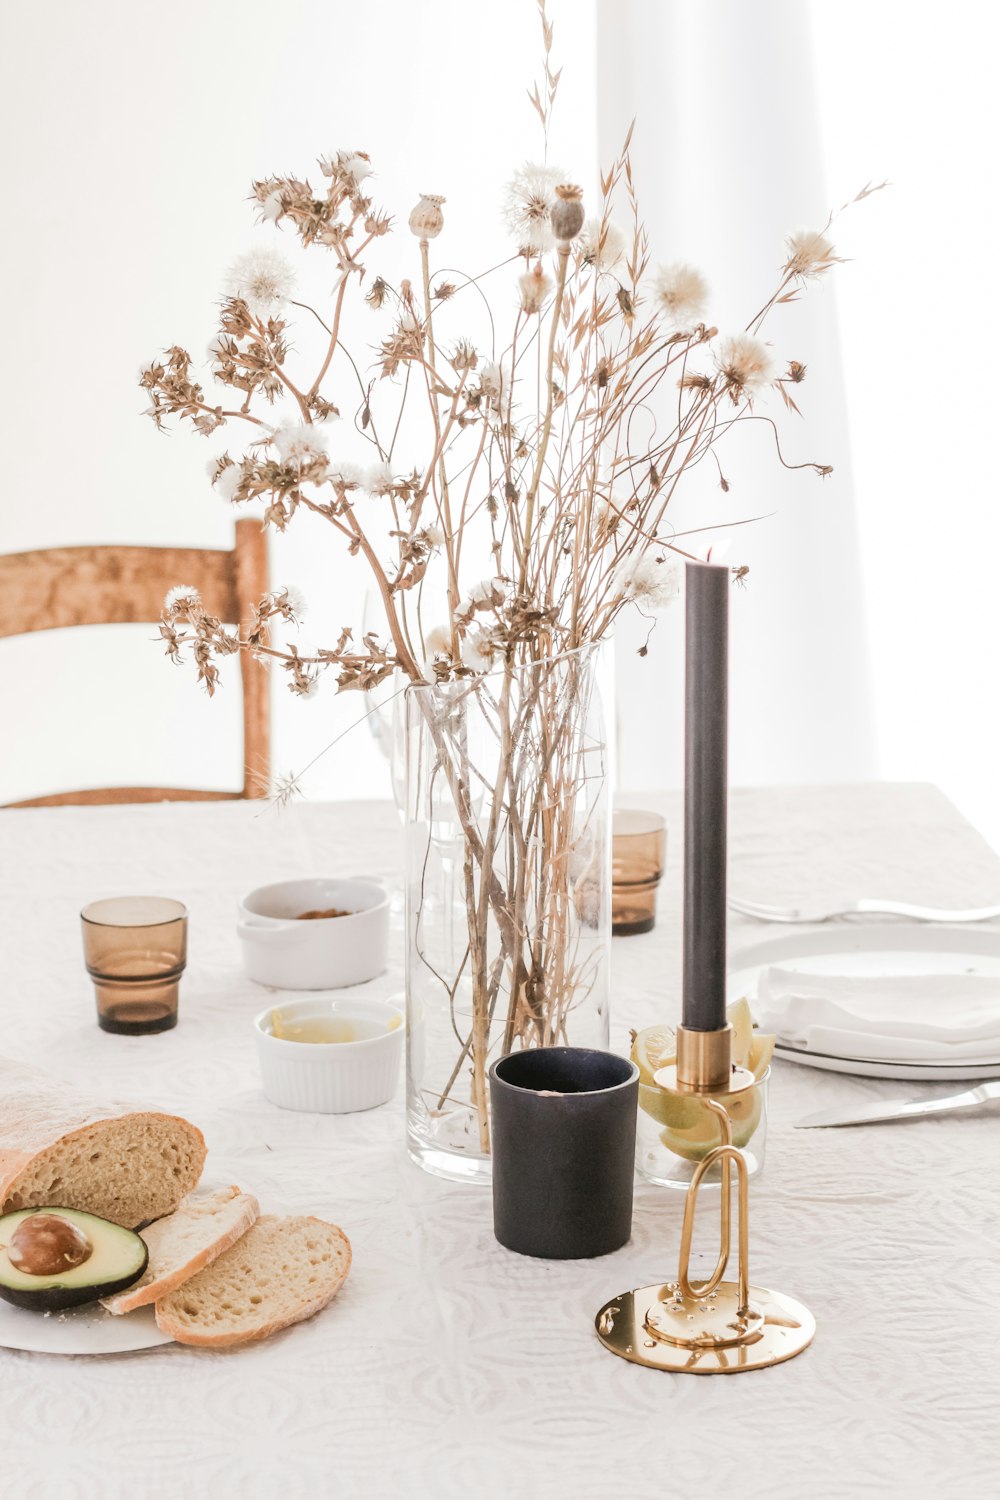 Brot und Blume auf dem Tisch